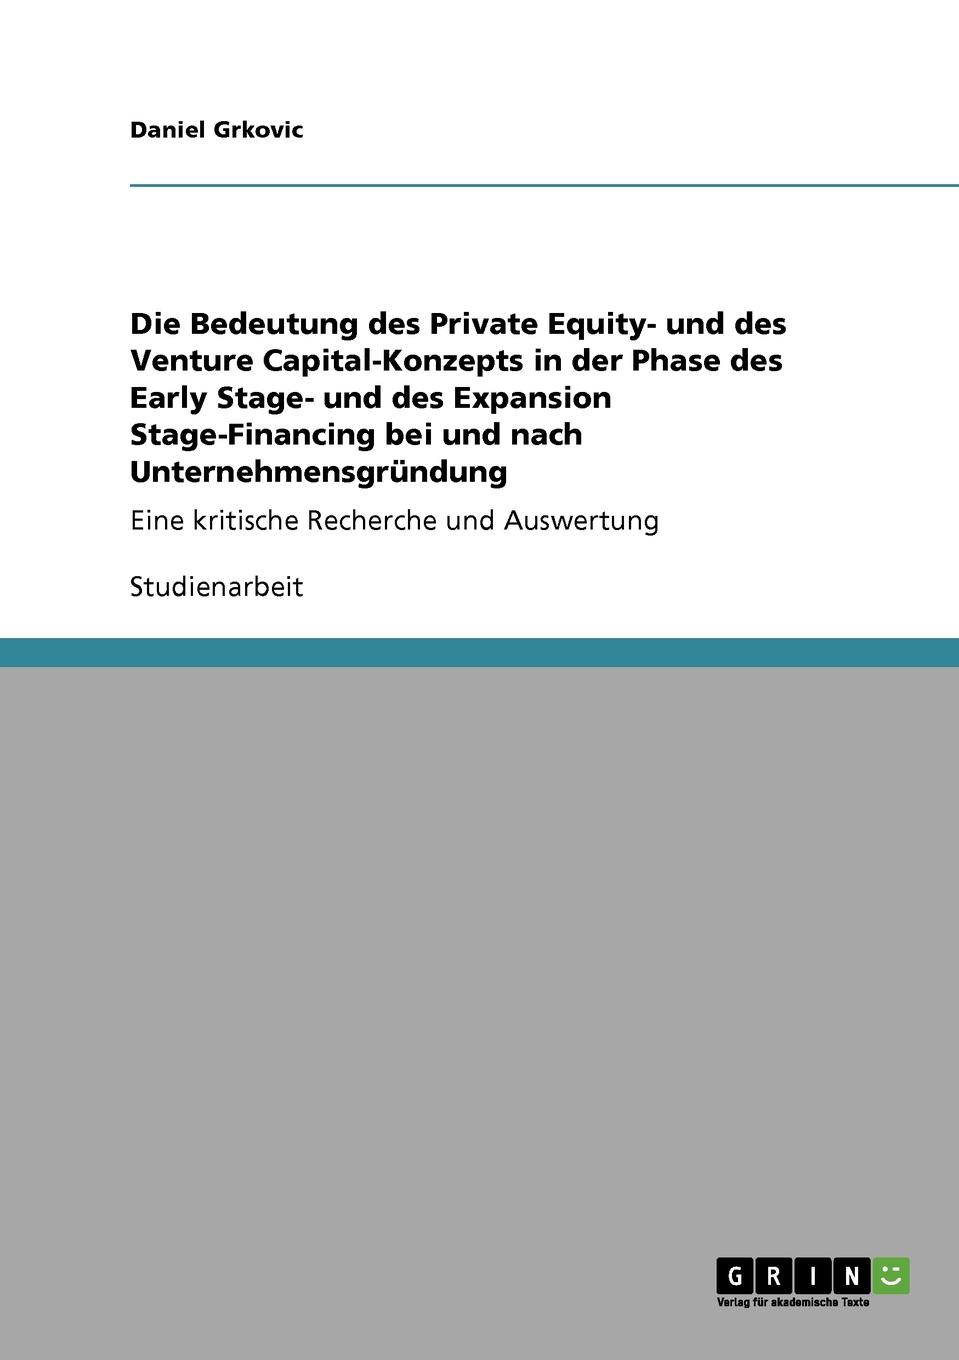 фото Die Bedeutung des Private Equity- und des Venture Capital-Konzepts in der Phase des Early Stage- und des Expansion Stage-Financing bei und nach Unternehmensgrundung